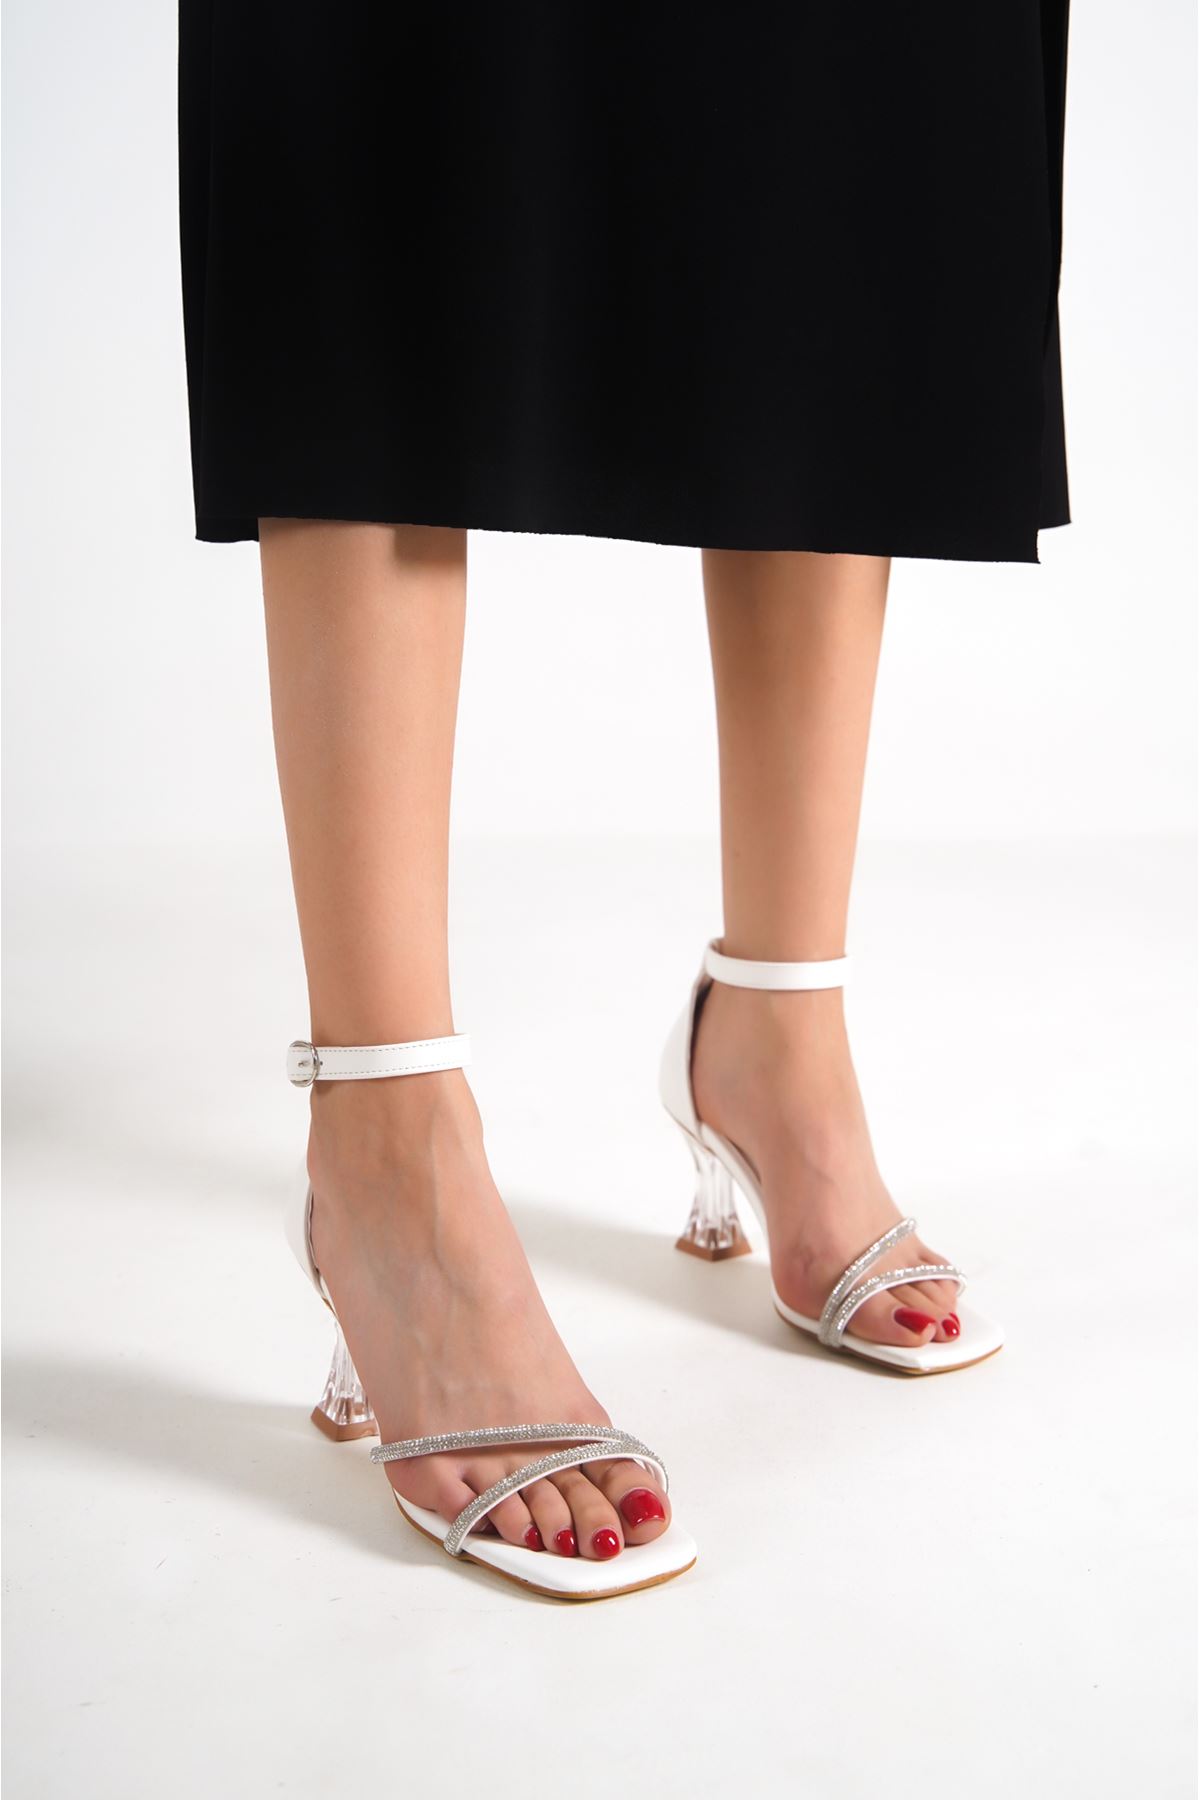 Steve Beyaz Taşlı Şeffaf Topuklu Mat Deri Kadın Ayakkabı